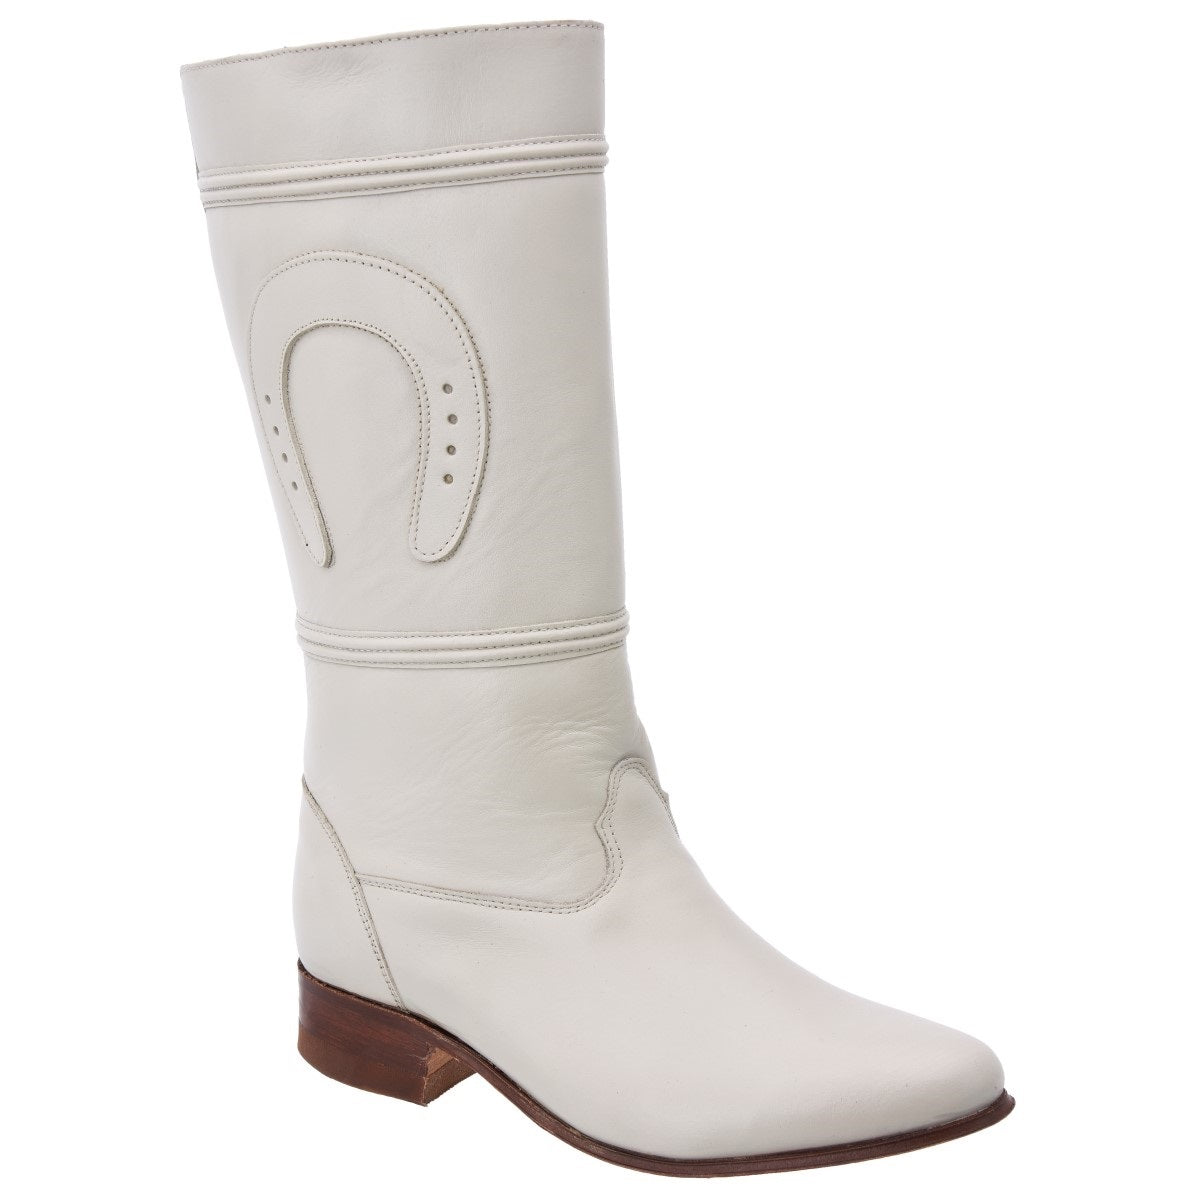 Botas Vaqueras TM-WD0511 - Western Boots